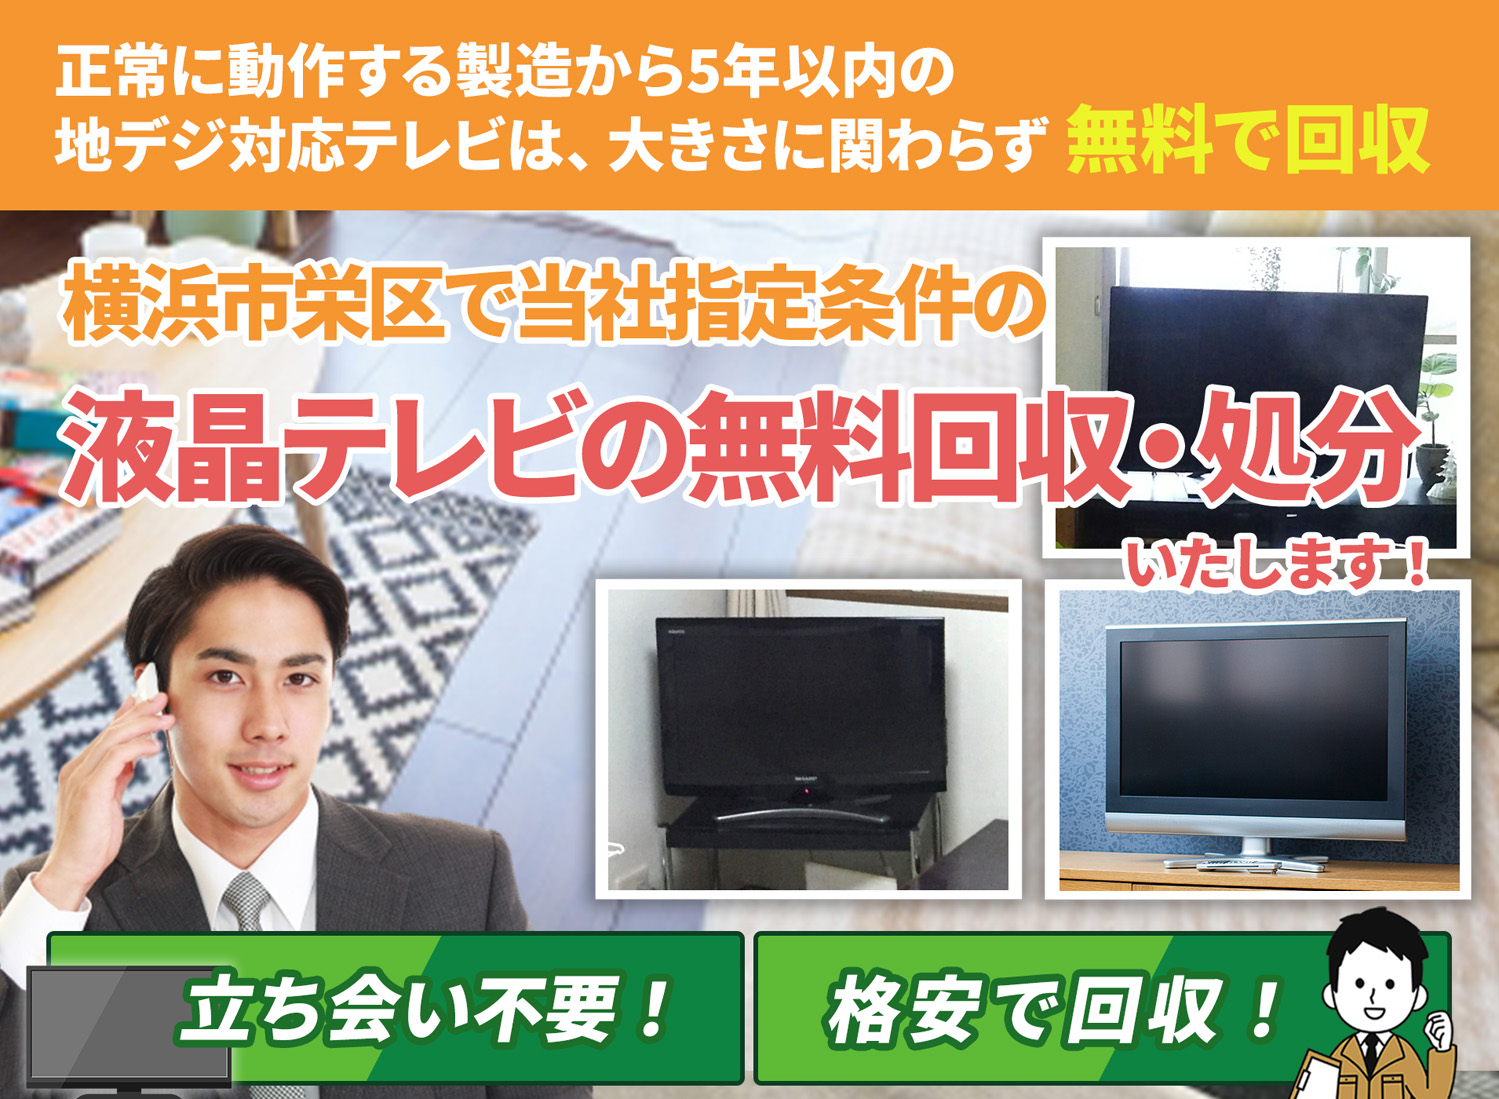 横浜市栄区で丁寧に「お客様と寄り添う」液晶テレビ無料回収処分隊の液晶テレビ無料回収サービス